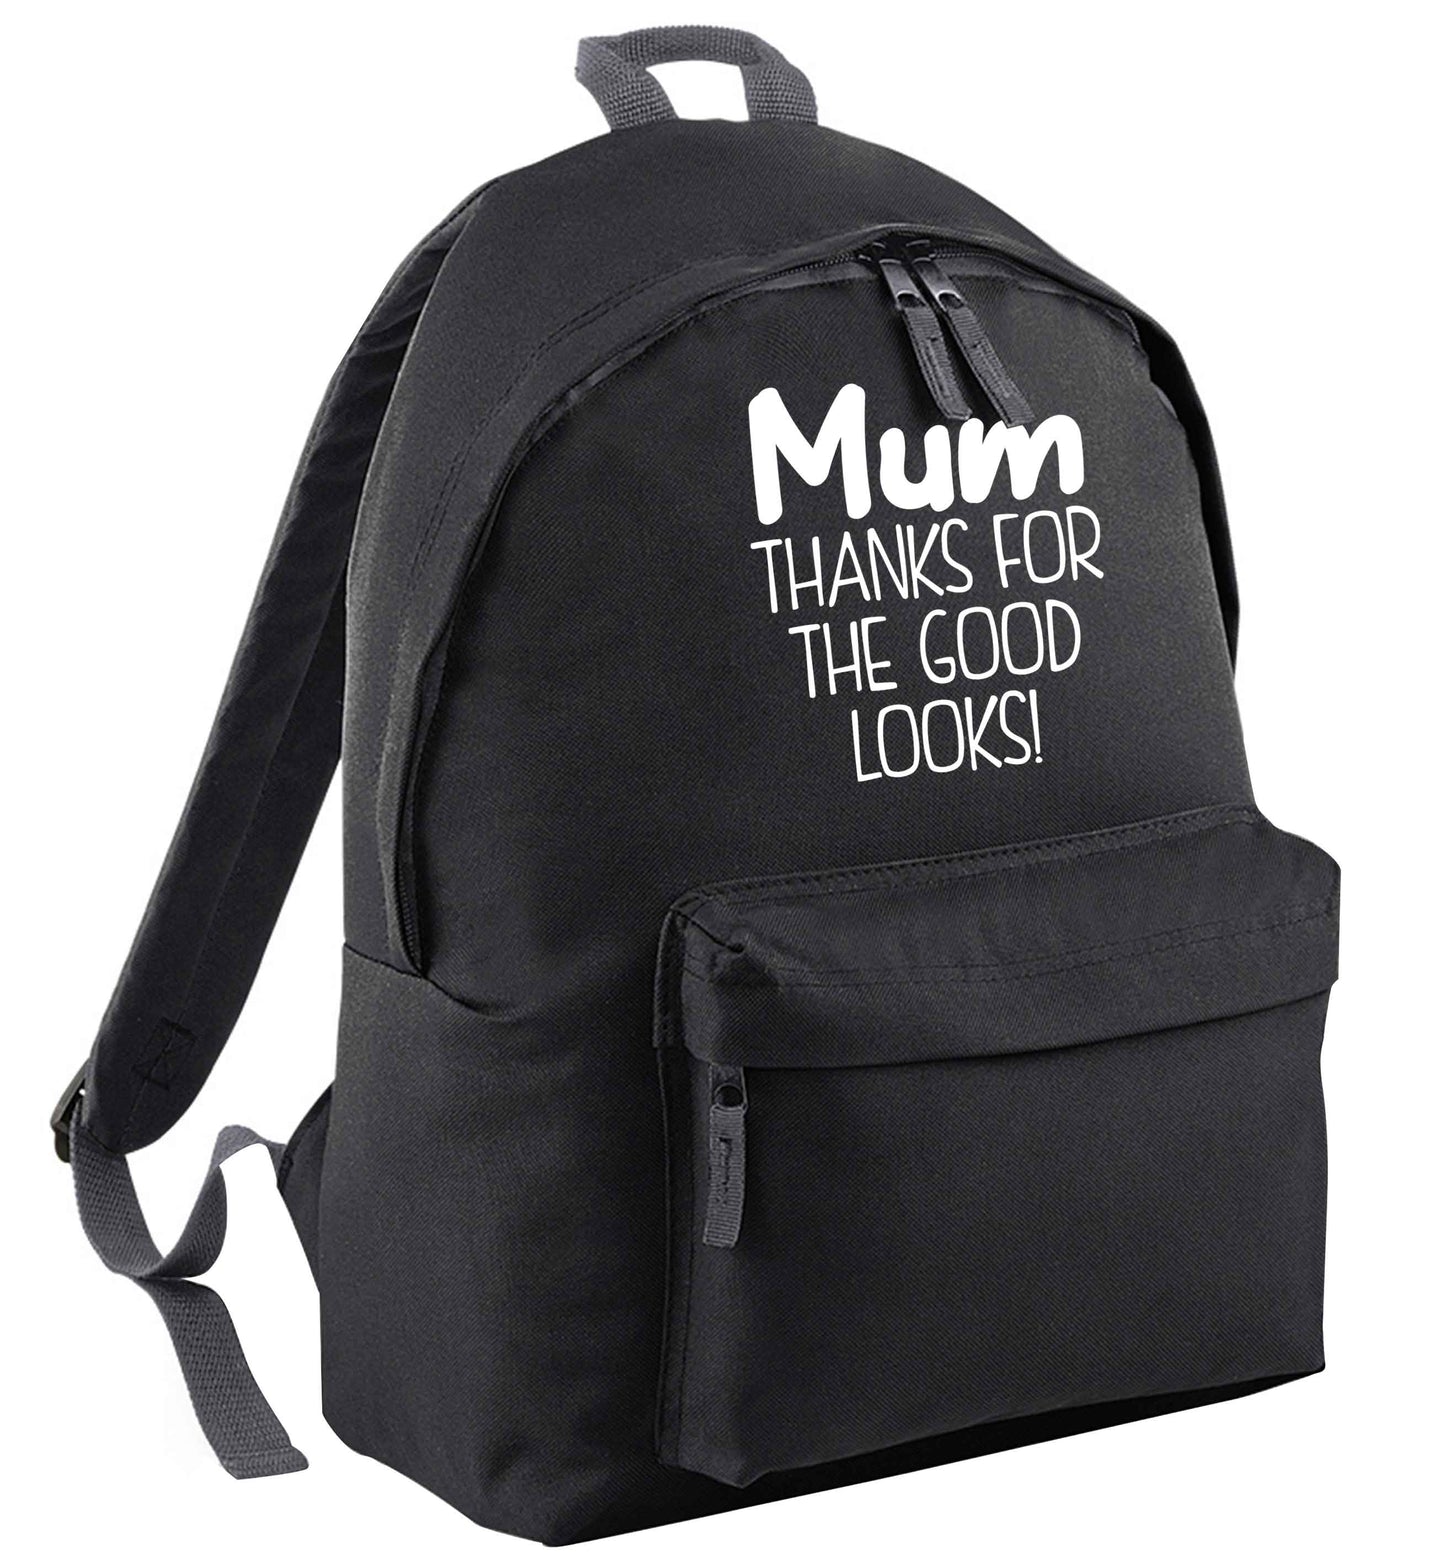 Mum thanks for the good looks! | Children's backpack